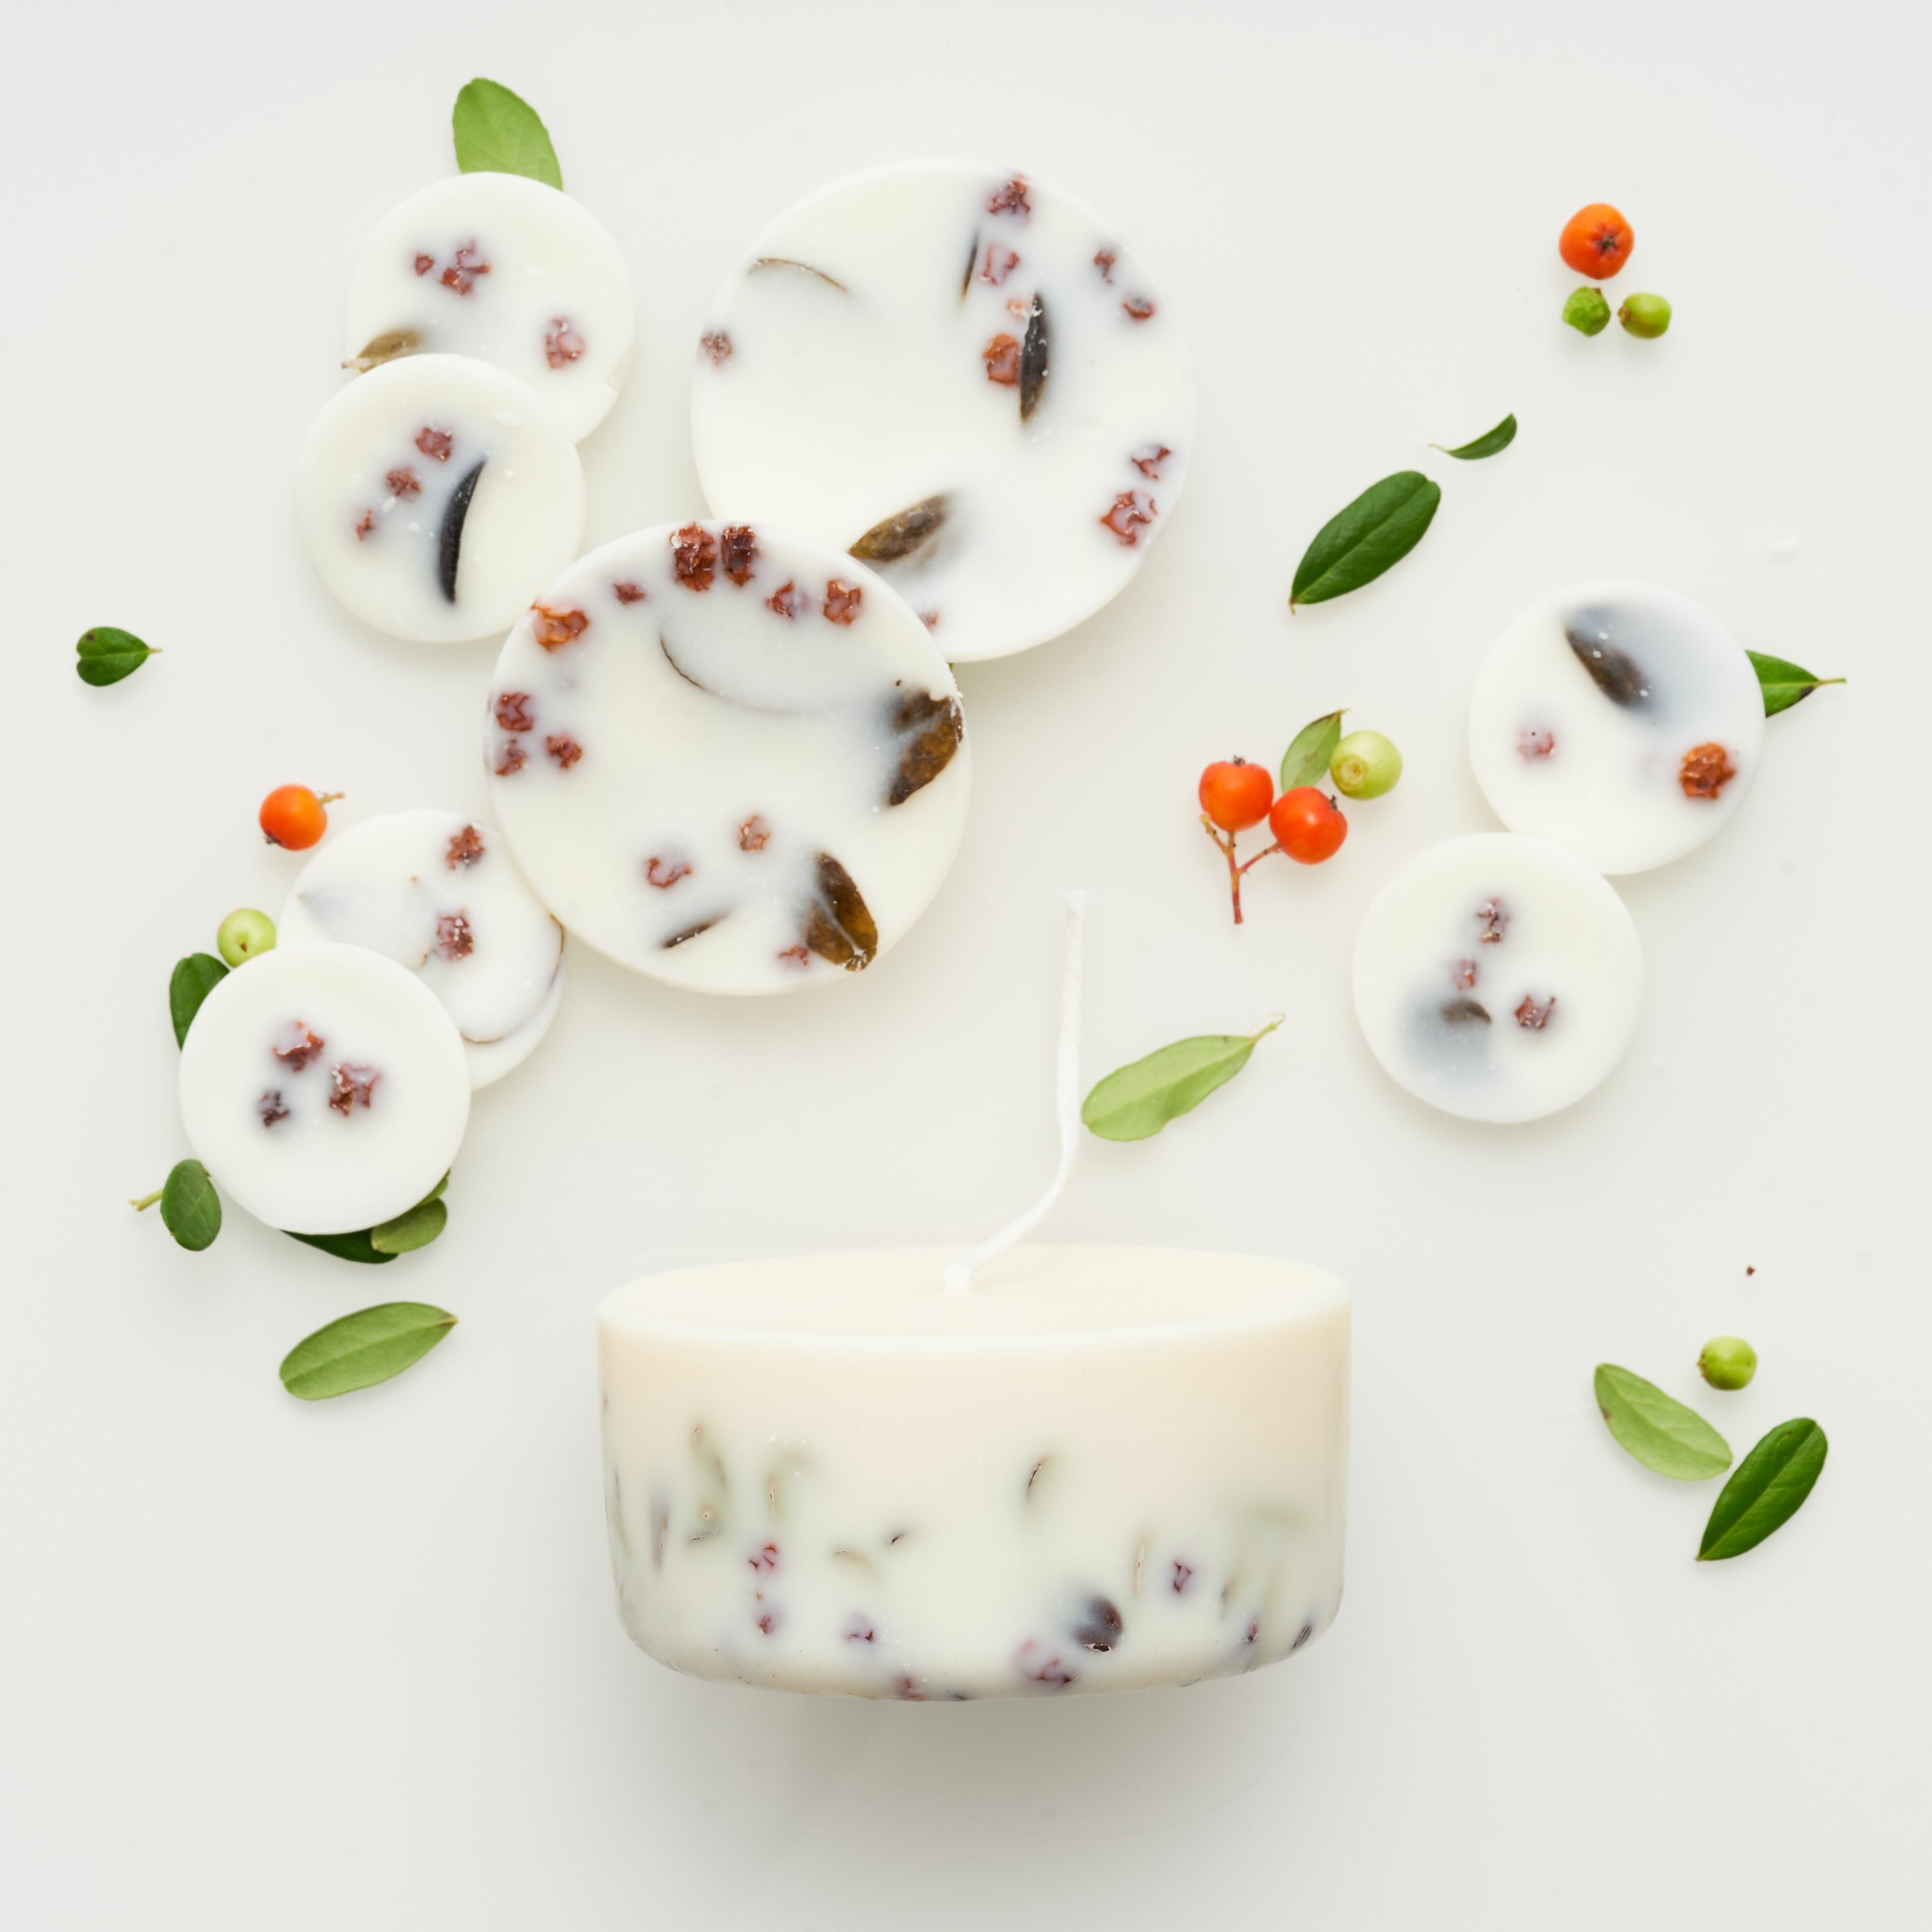 giftbox framboise feuille de myrtille parfum lavande munio candela cire de soja